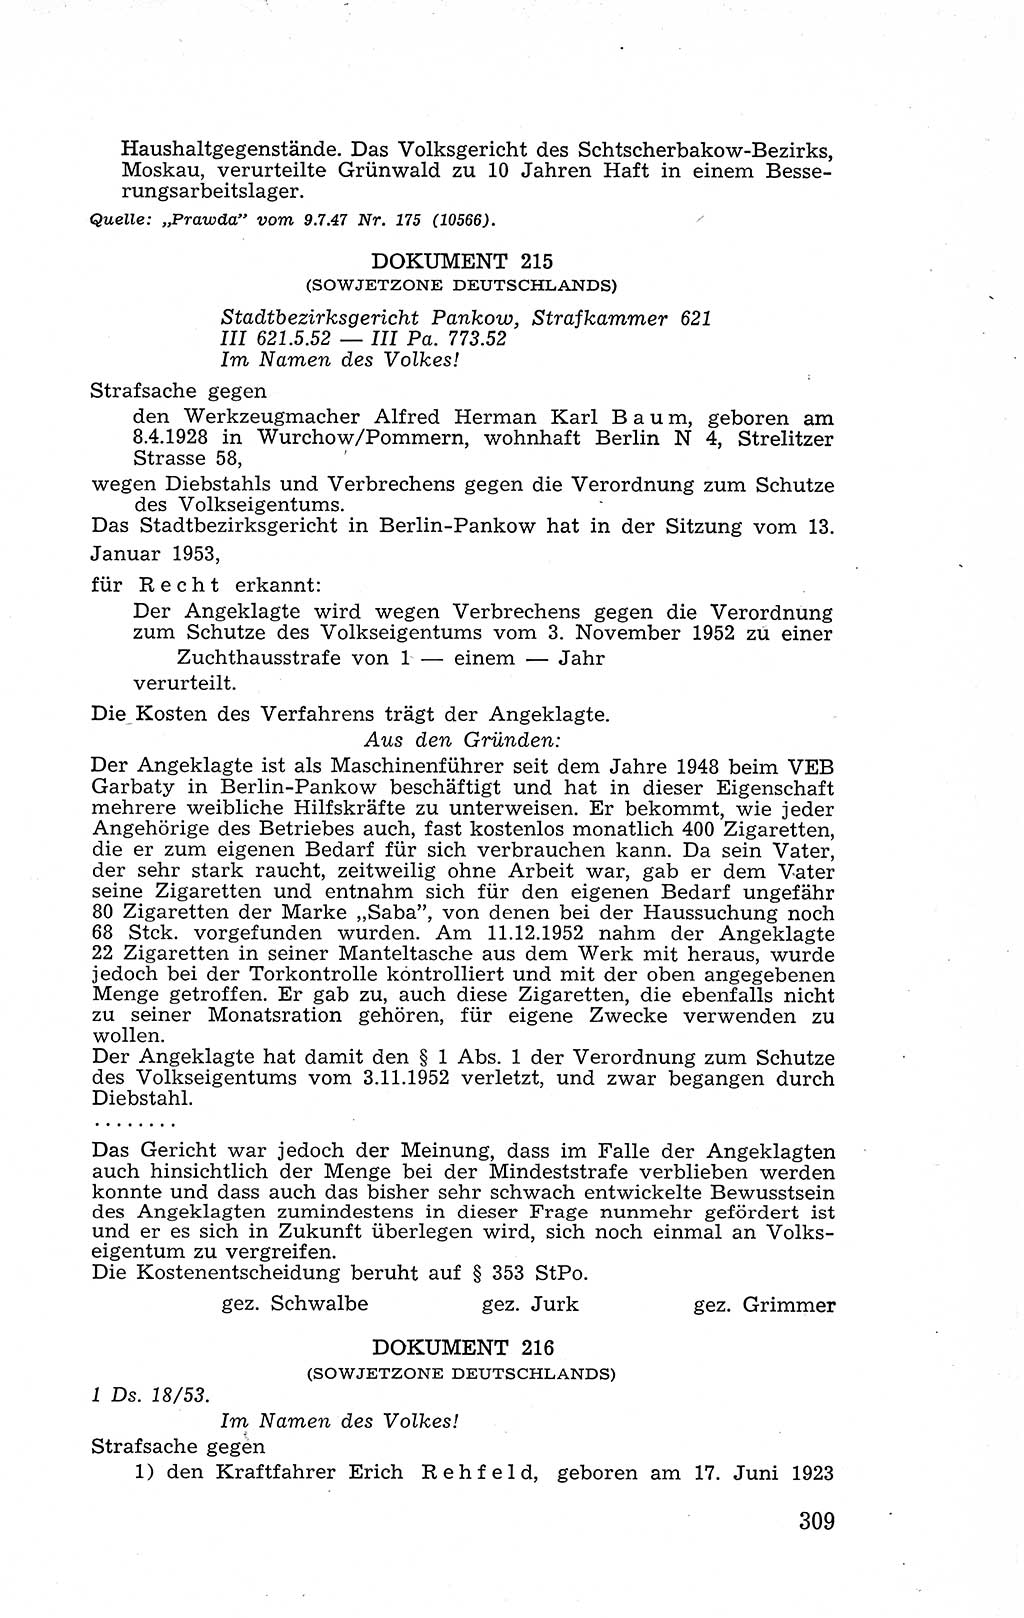 Recht in Fesseln, Dokumente, Internationale Juristen-Kommission [Bundesrepublik Deutschland (BRD)] 1955, Seite 309 (R. Dok. IJK BRD 1955, S. 309)